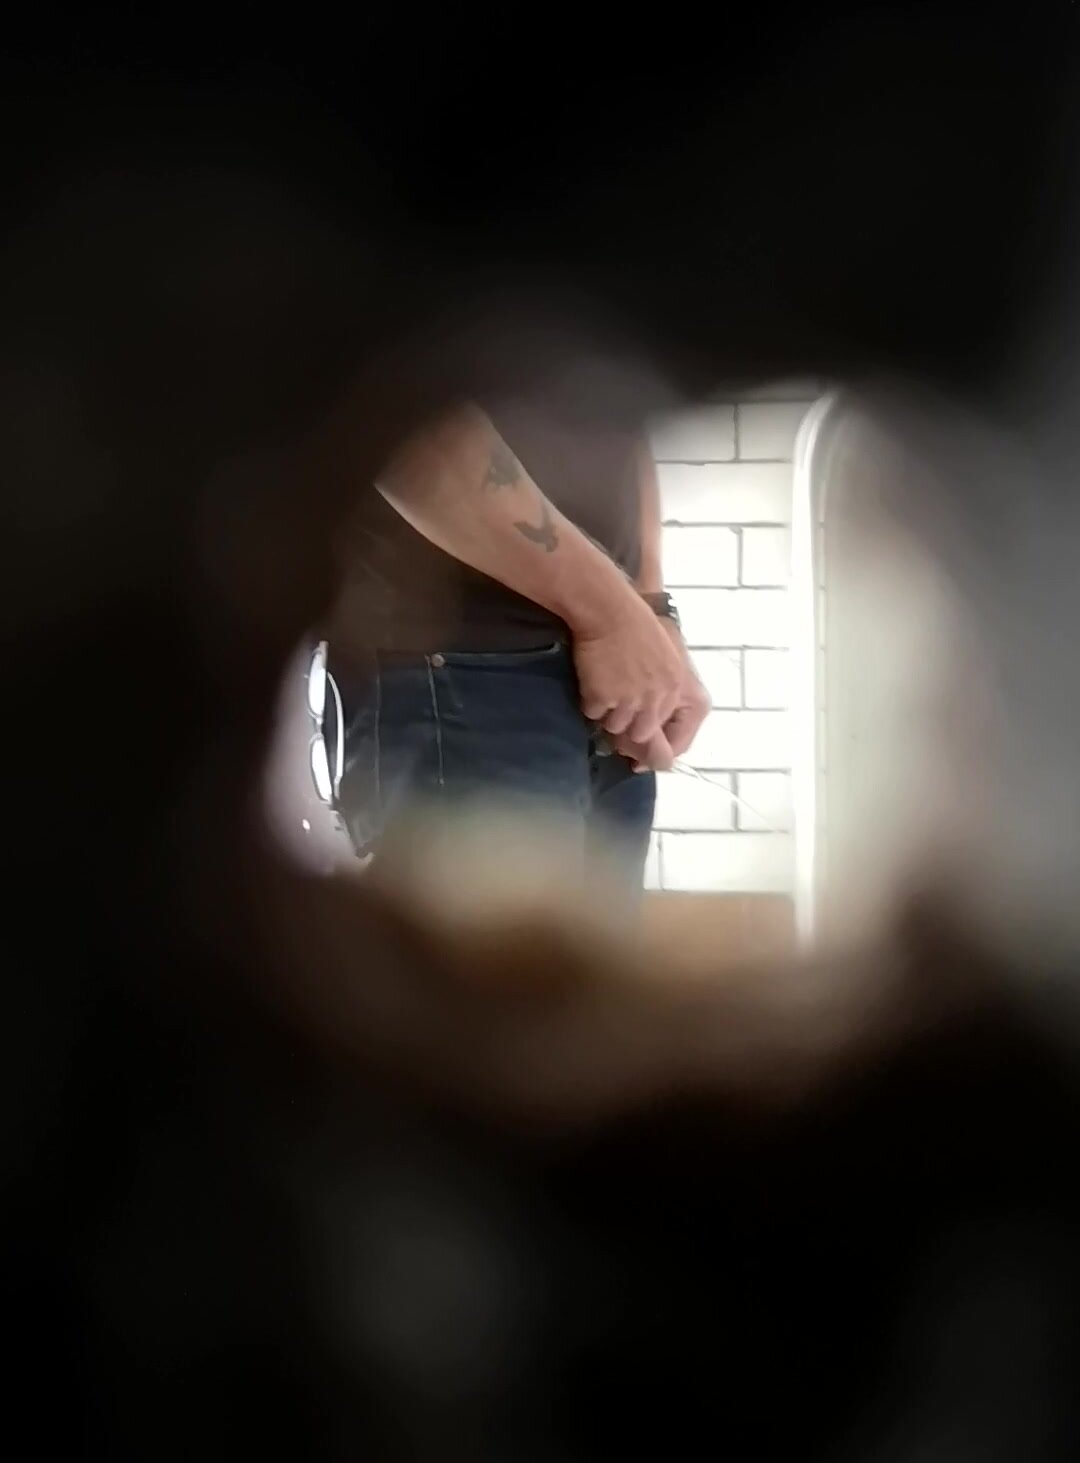 Urinal spyhole - video 2